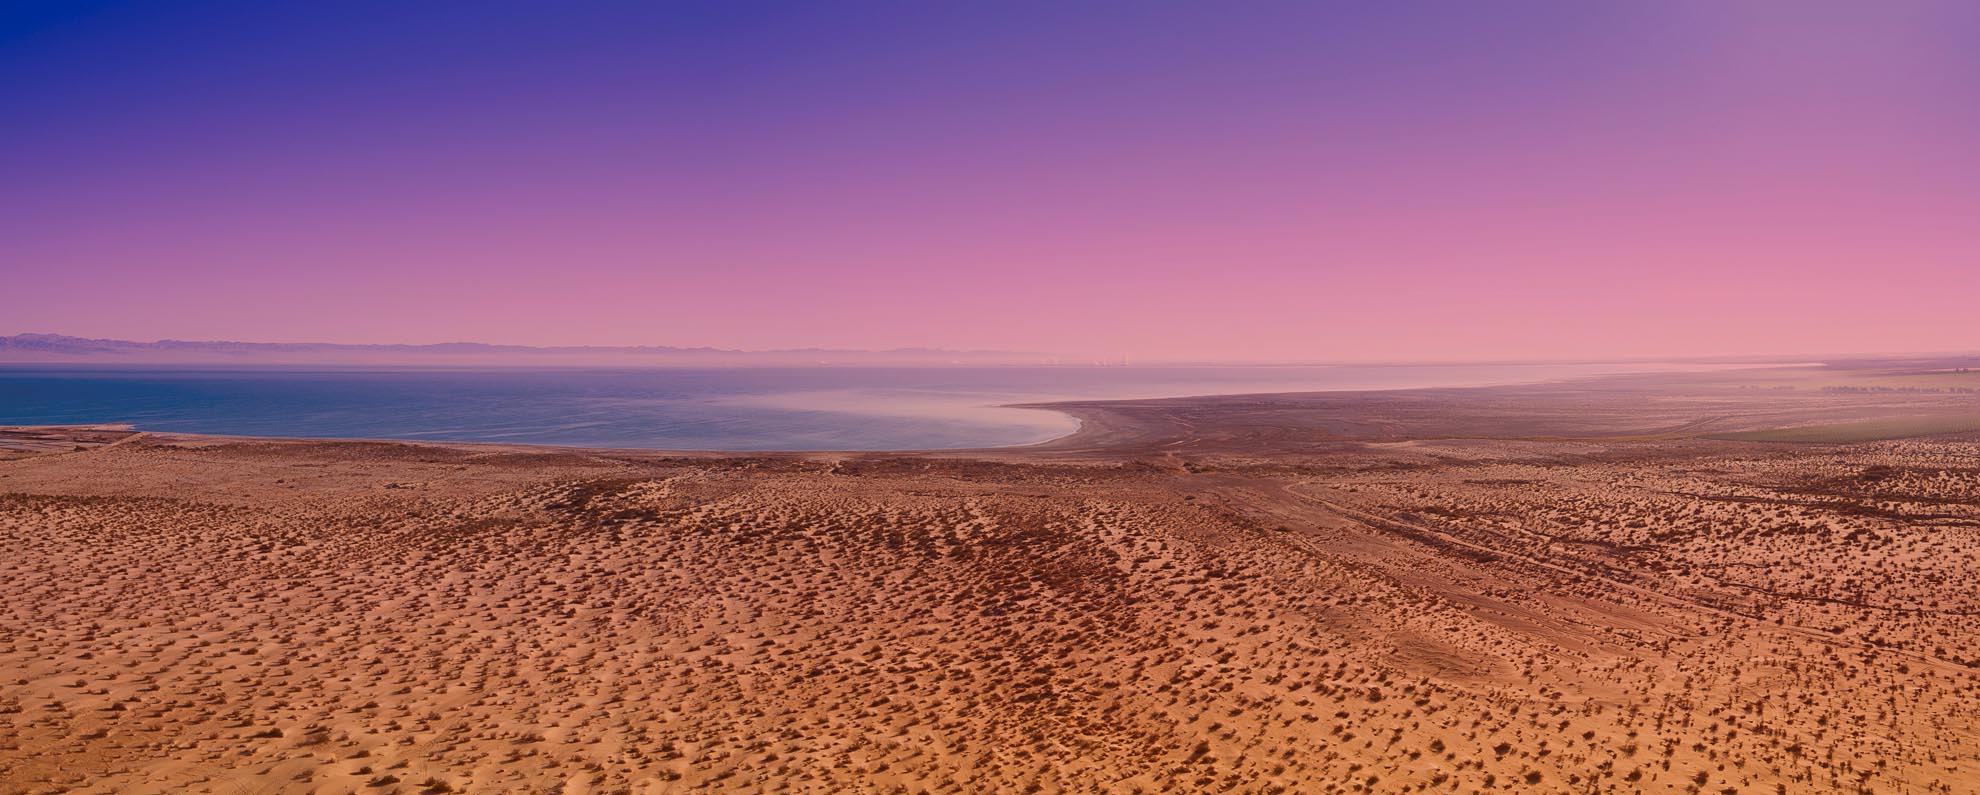 Drone Photograph of Salton Sea California